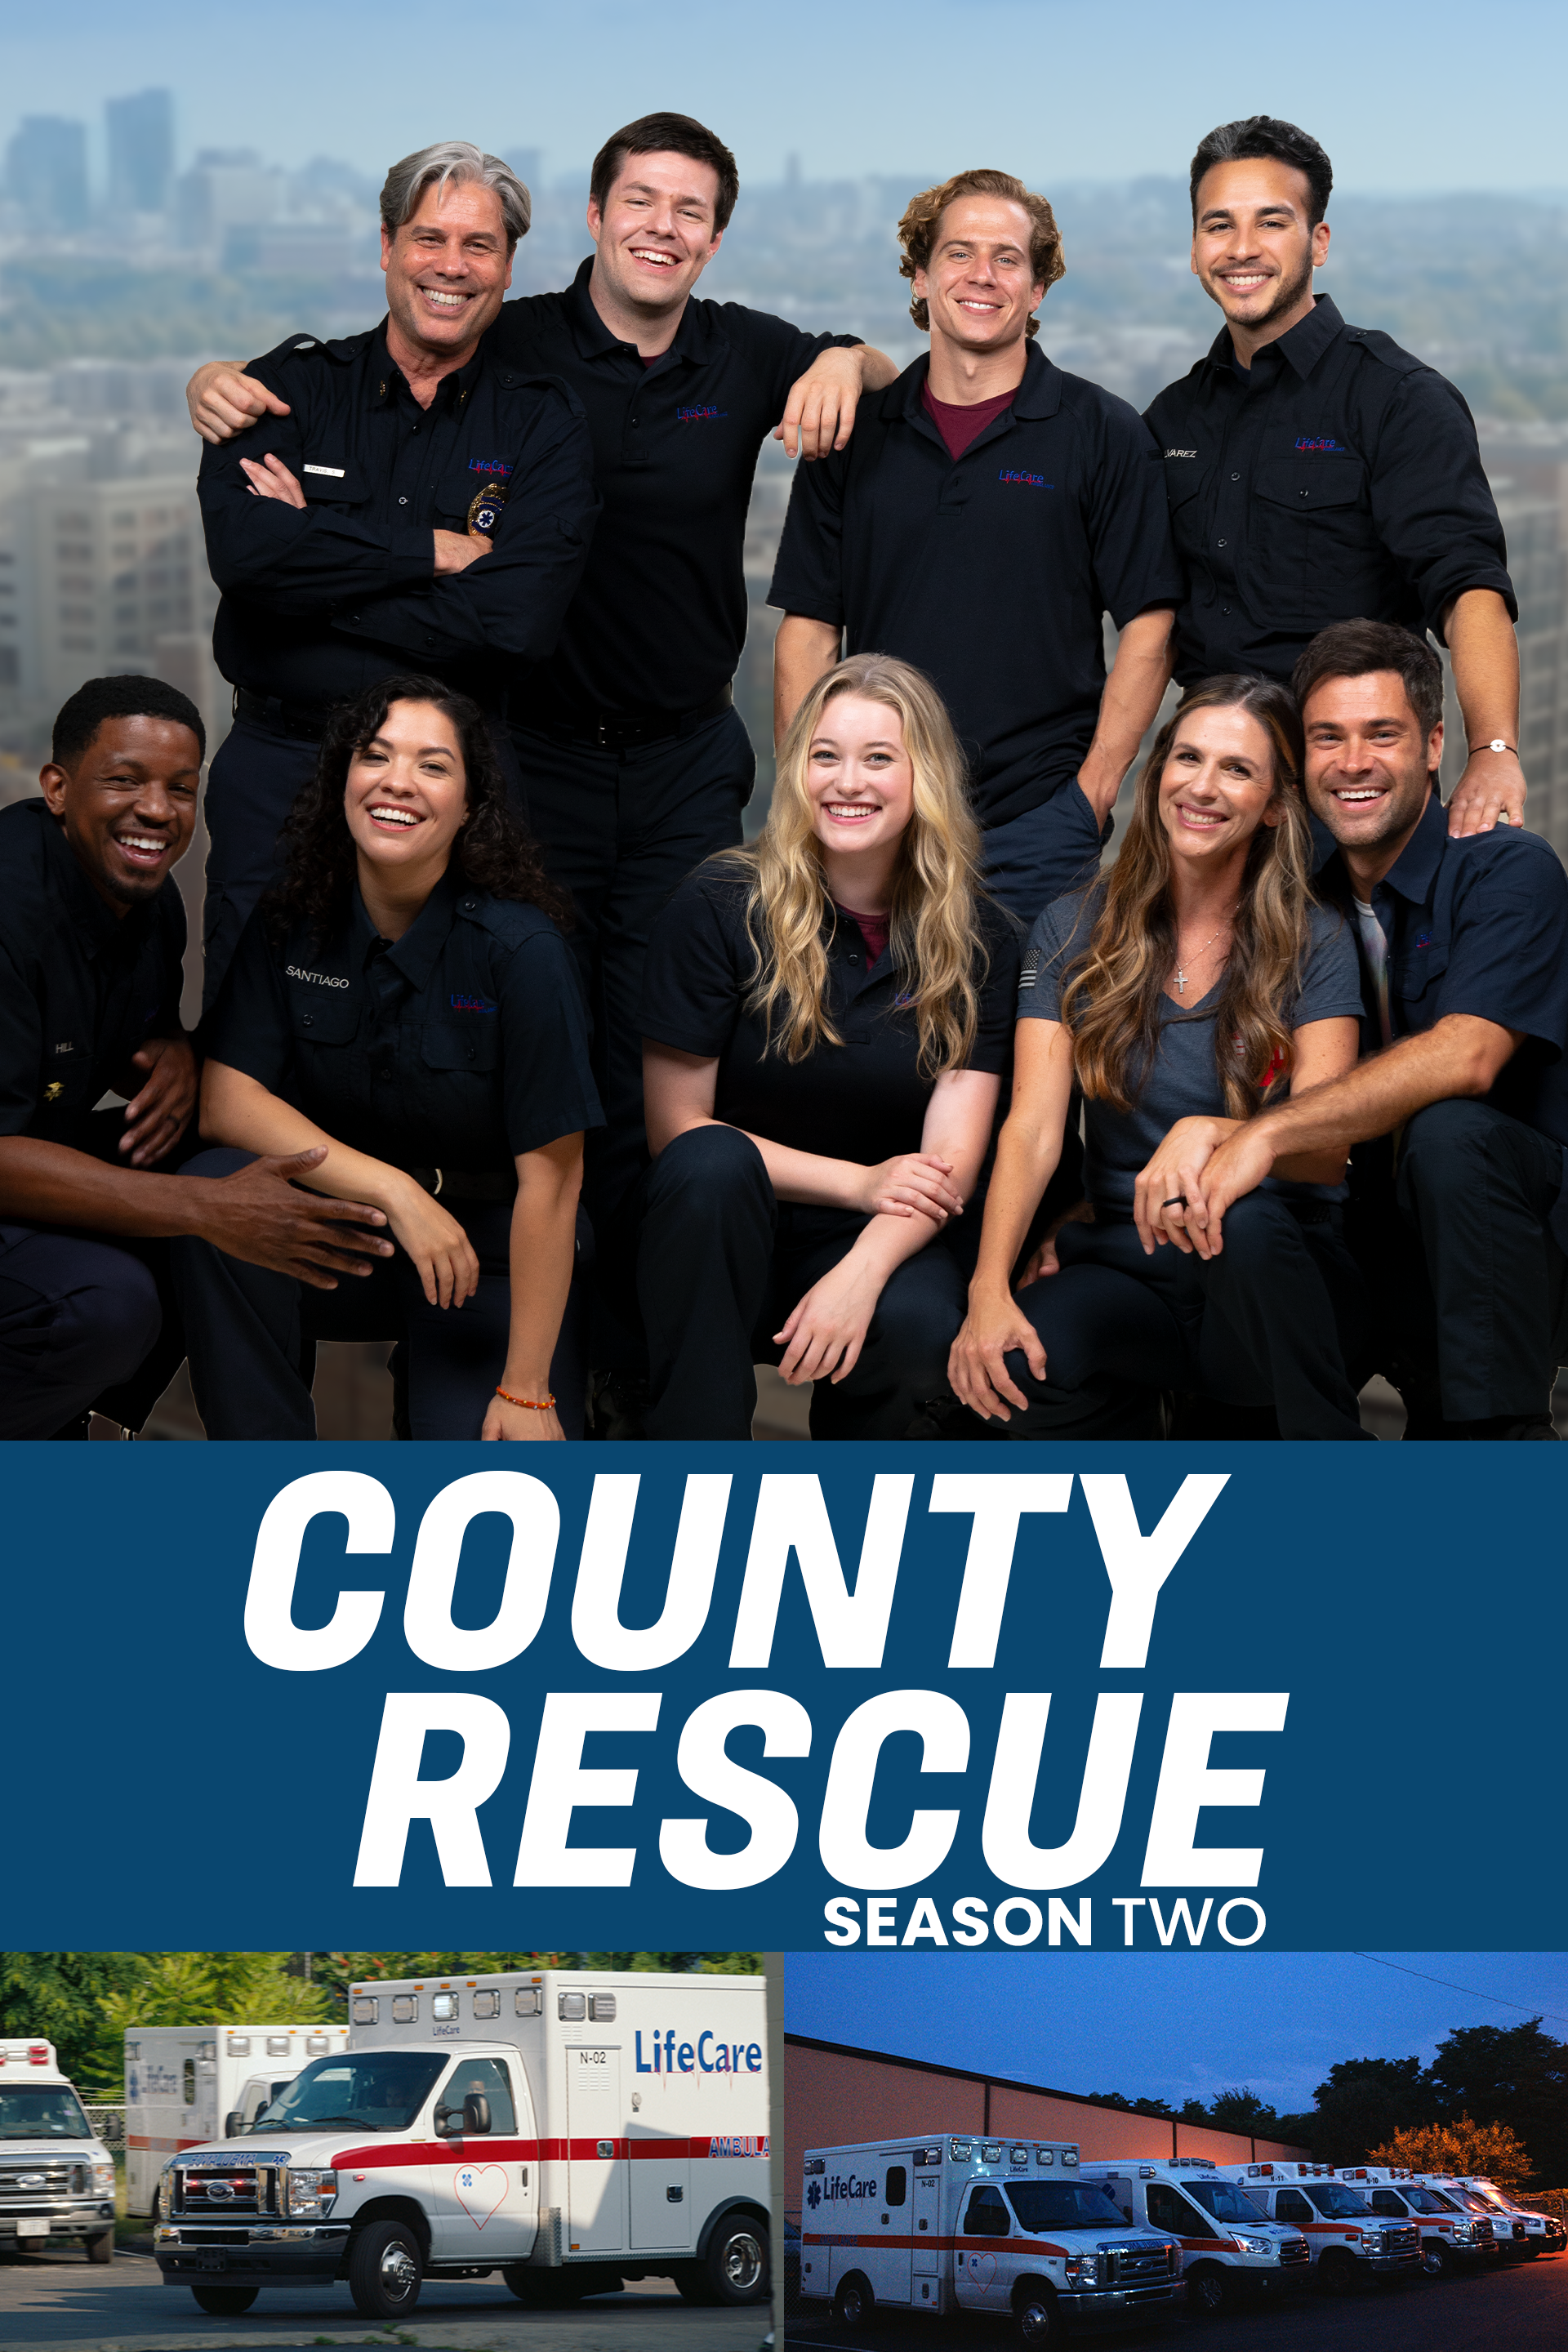 County Rescue, Season 2